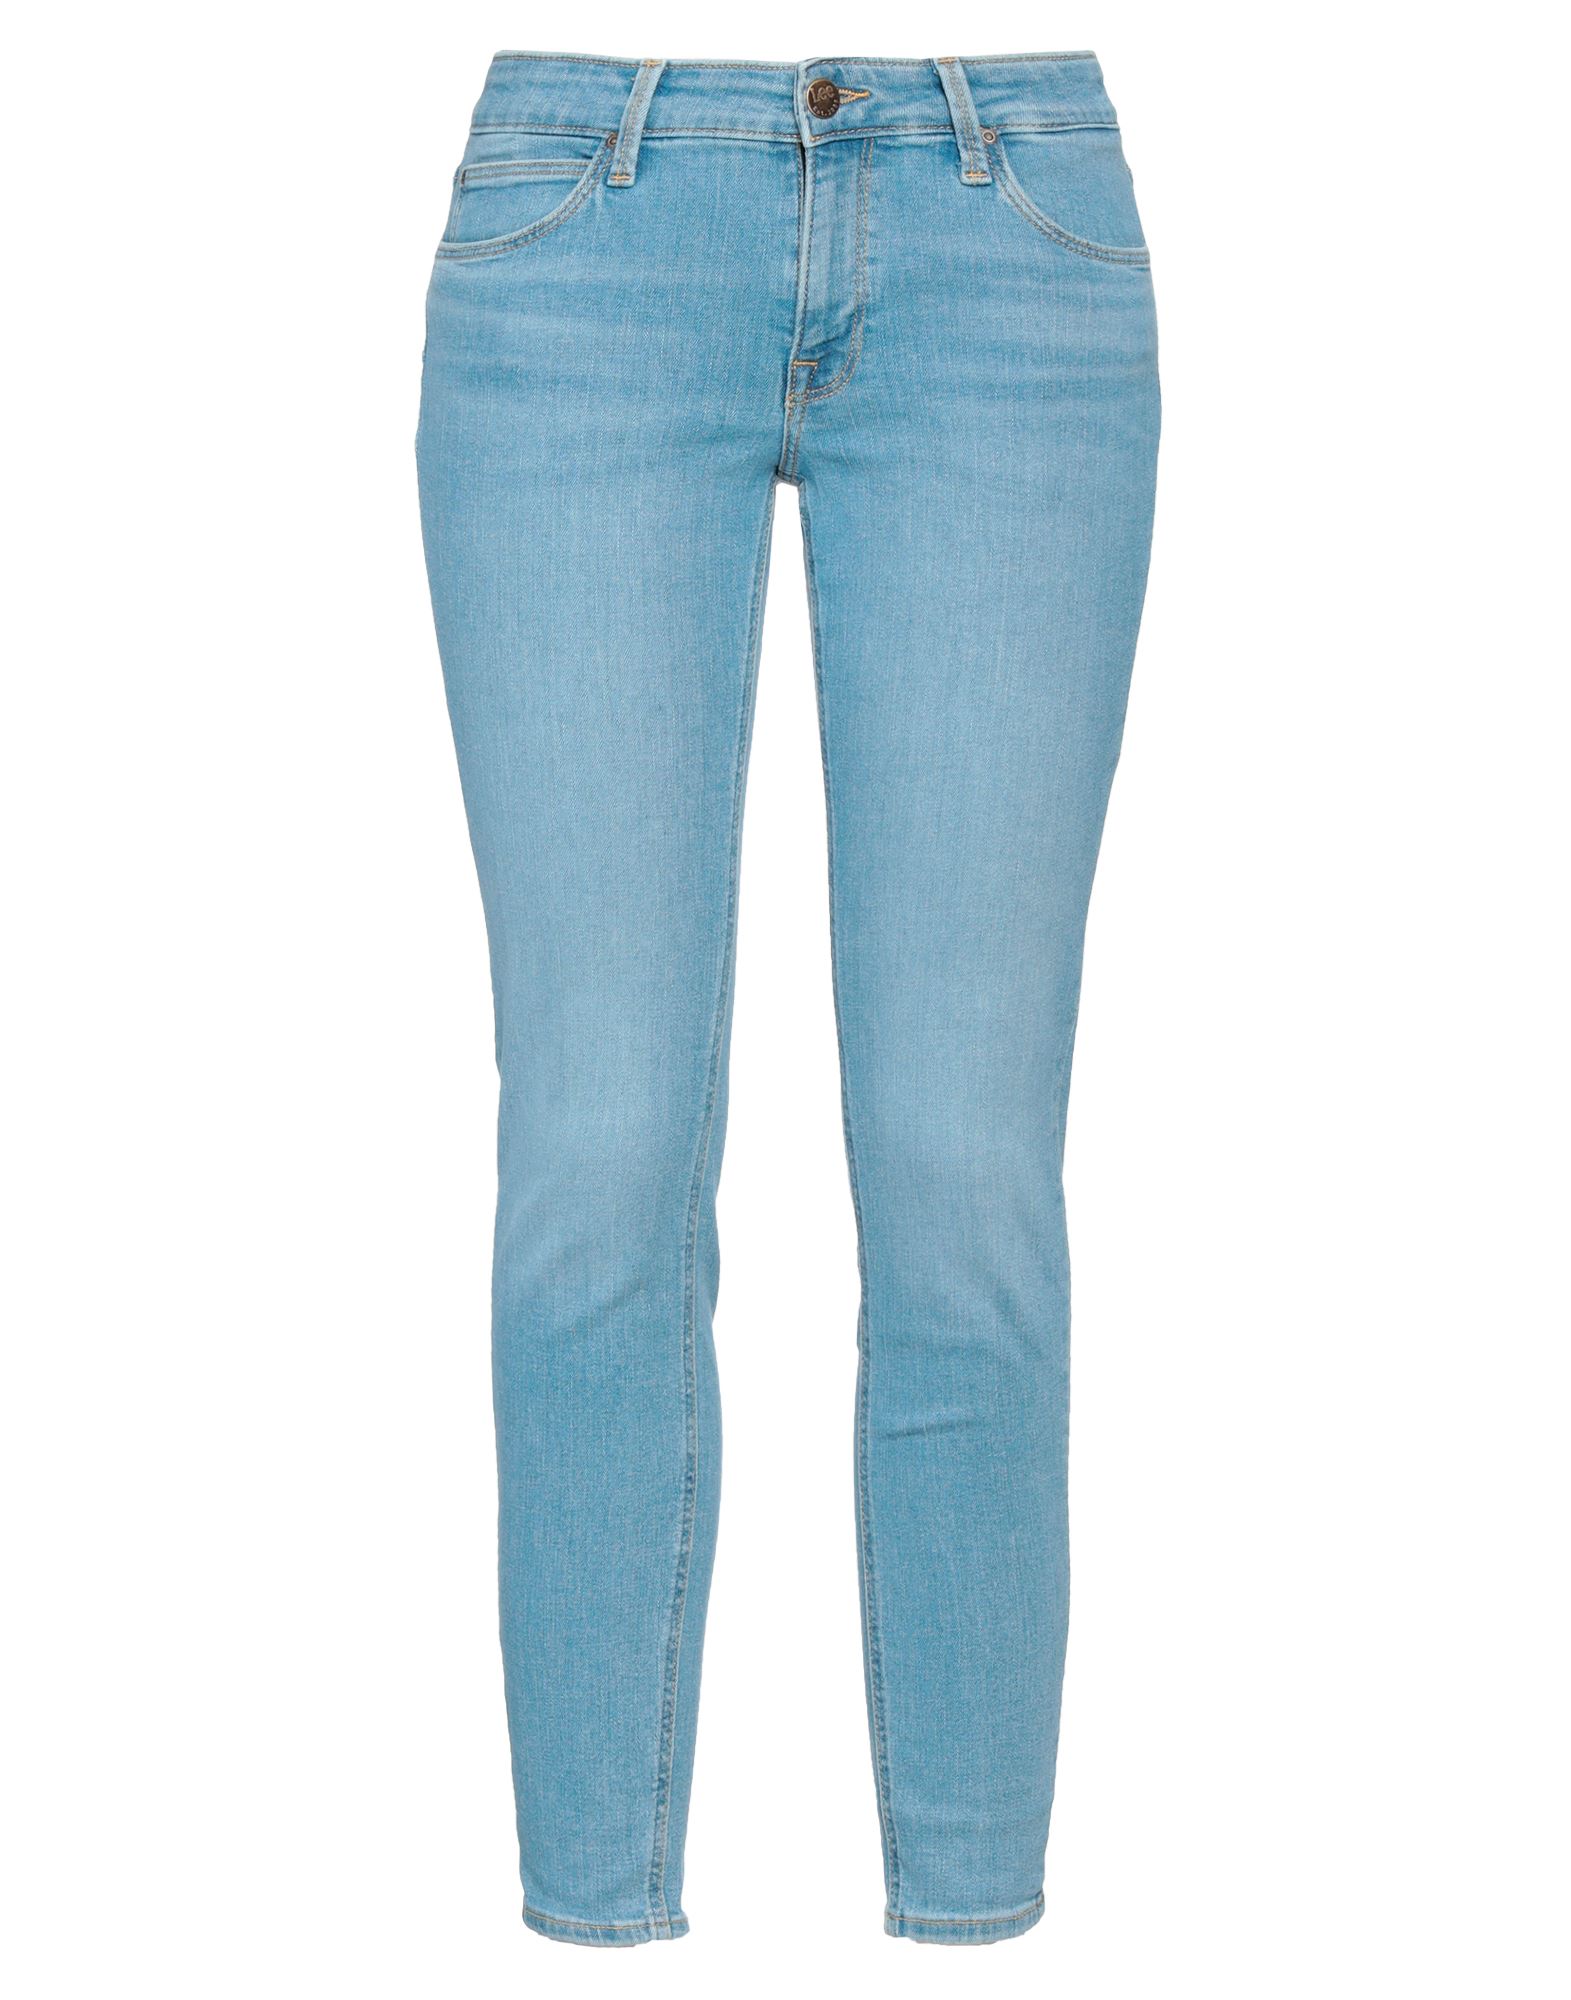 Lee Woman Jeans Blue Size 29w-31l Cotton, Polyethylene, Elastane